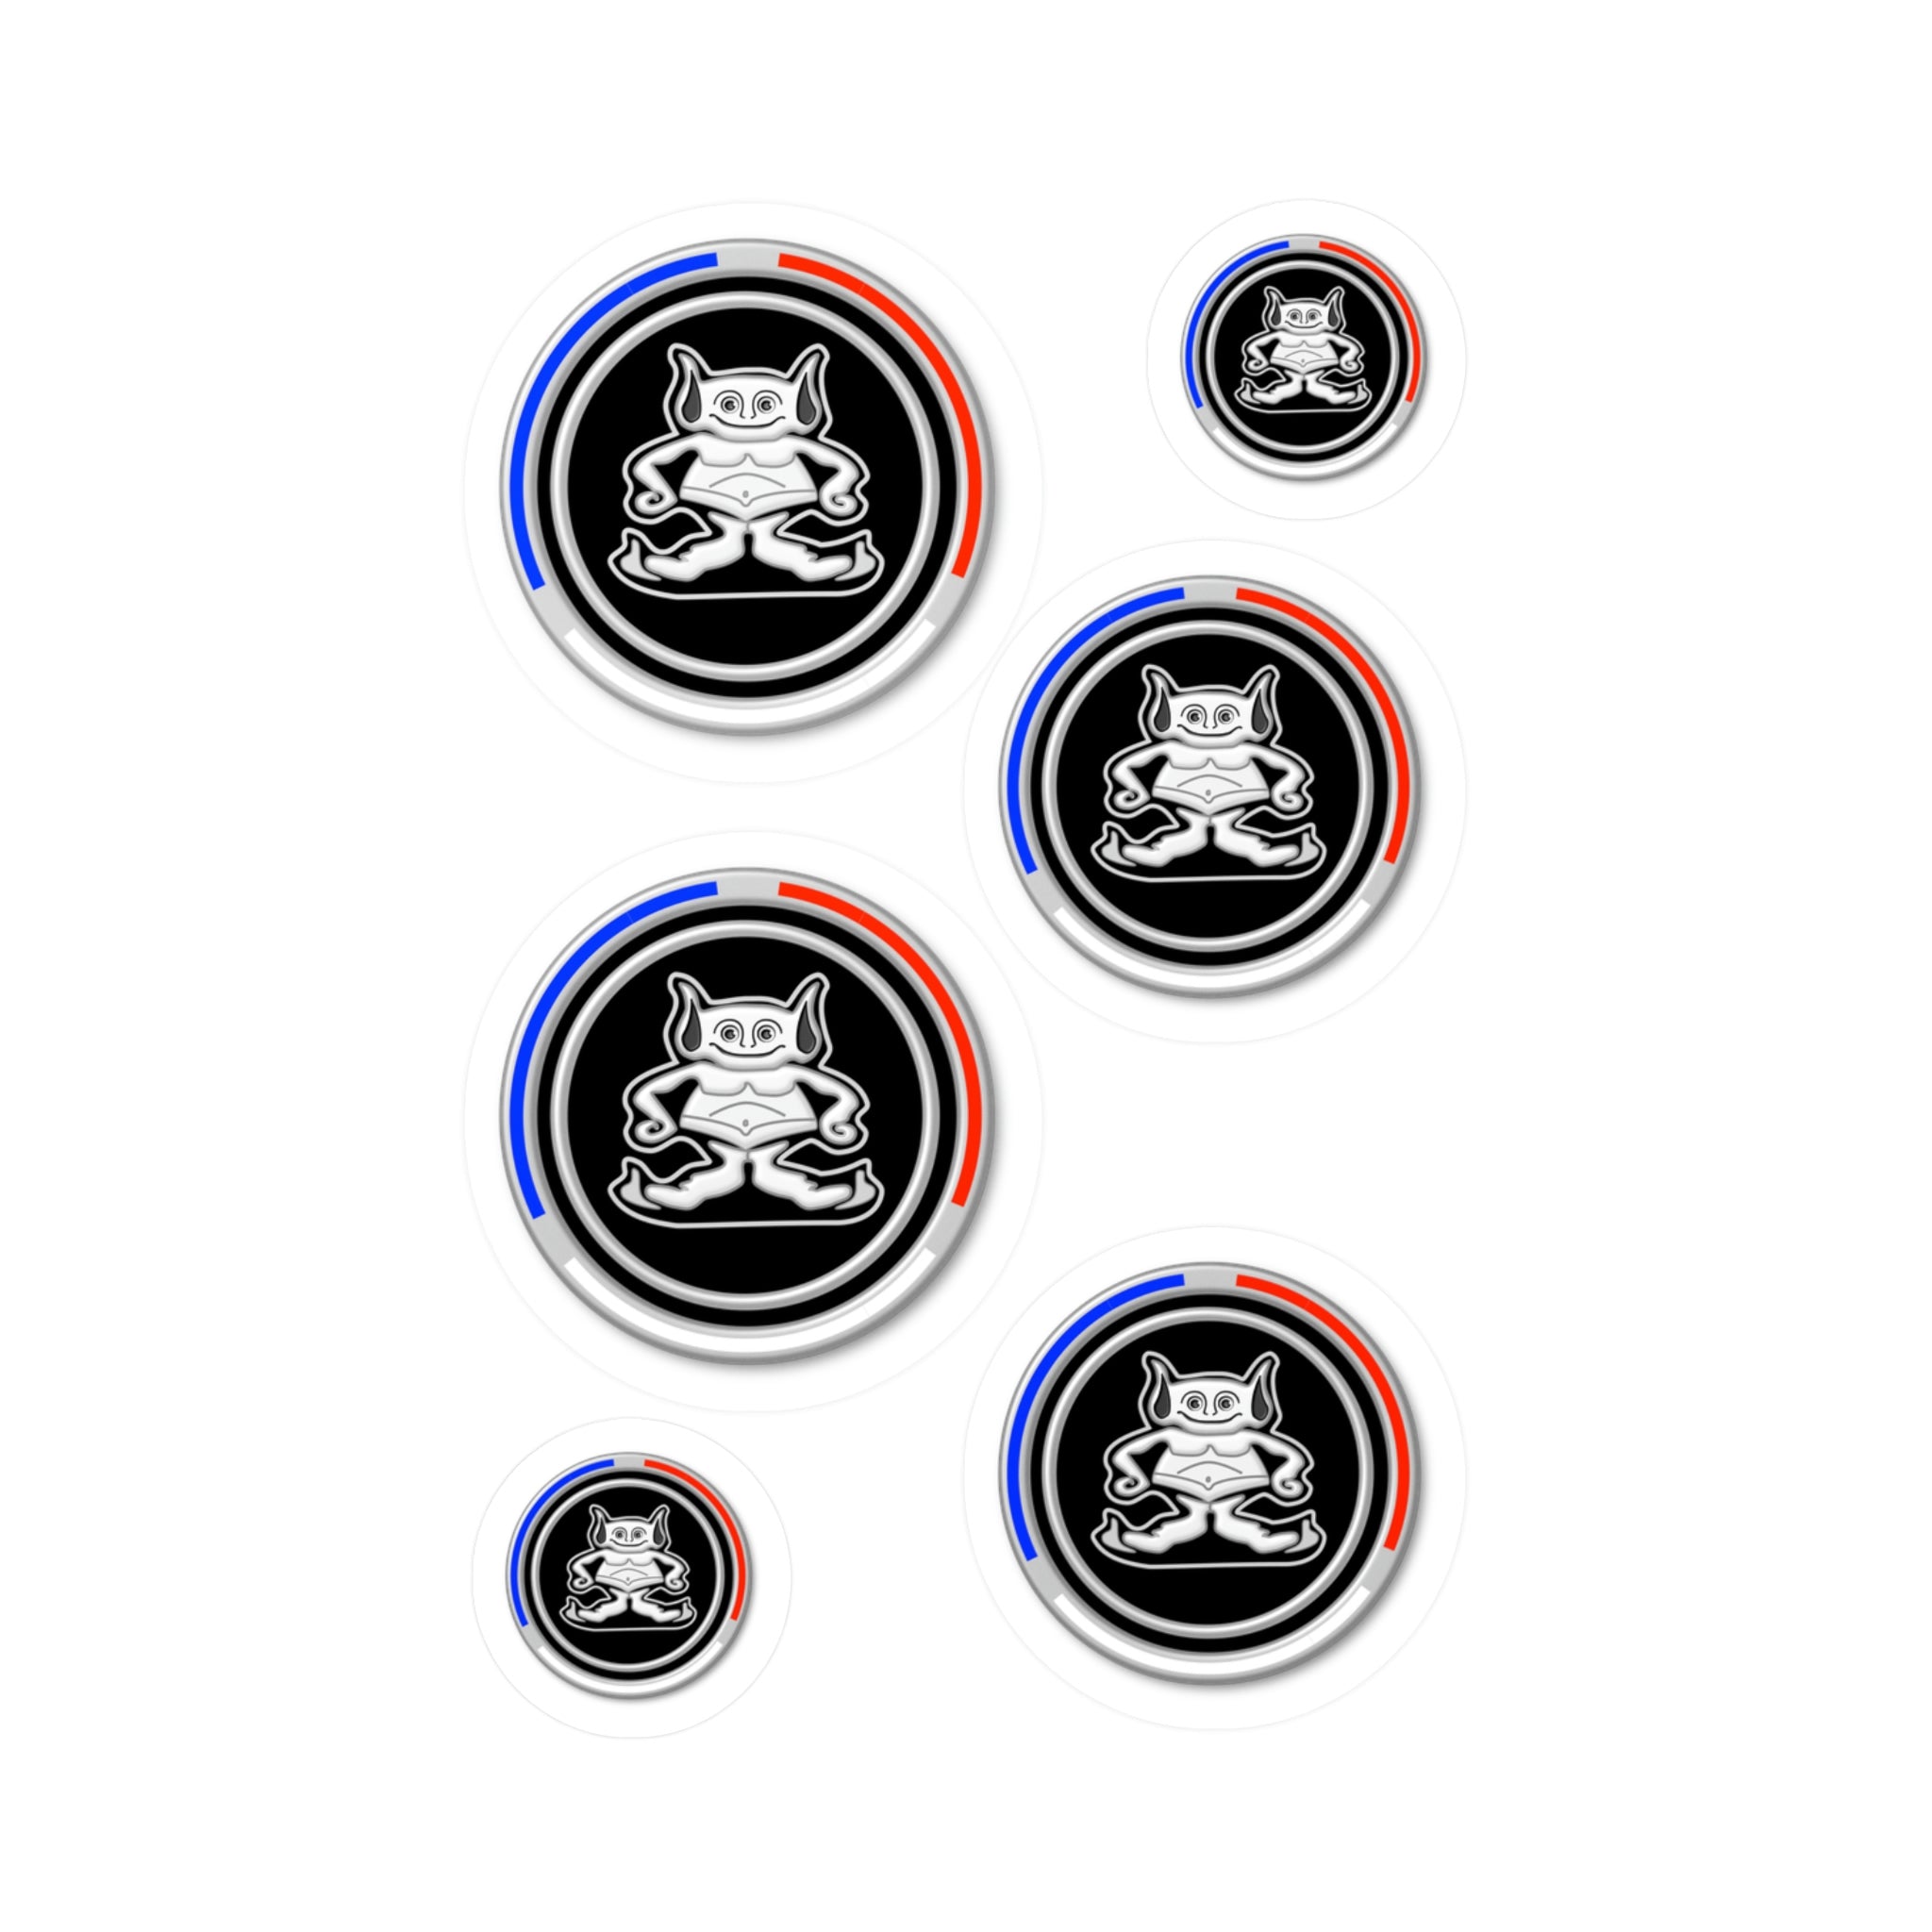 AMC Gremlin Decal Assortment - Emblem Badge Logo Script